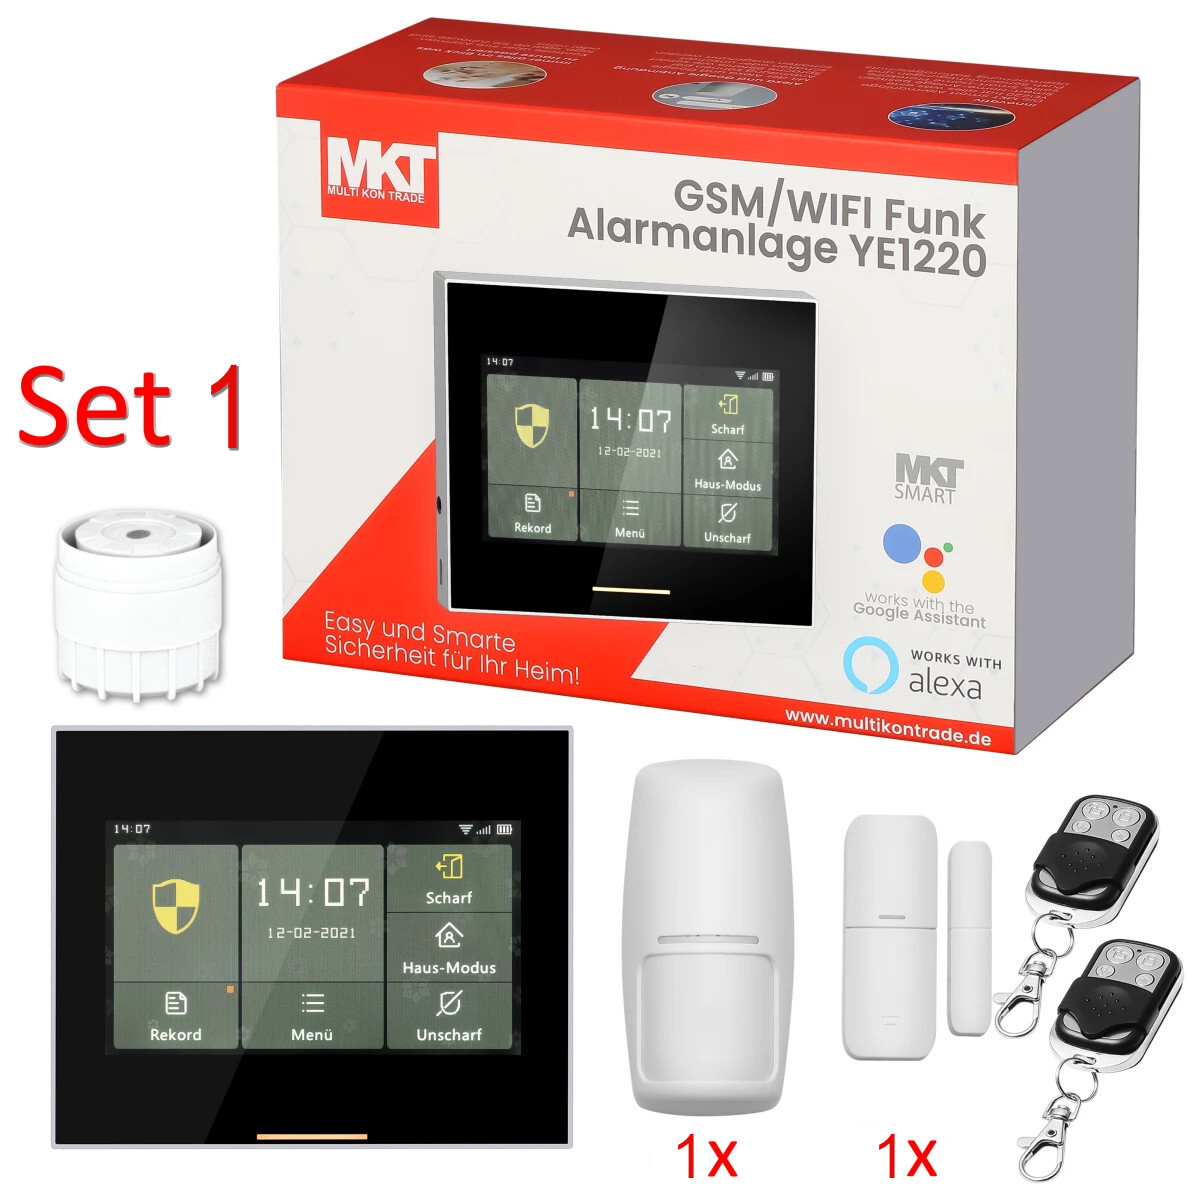 Funk GSM und WIFI Smart Home Alarmanlage mit Touchscreen YE1220 * Sta